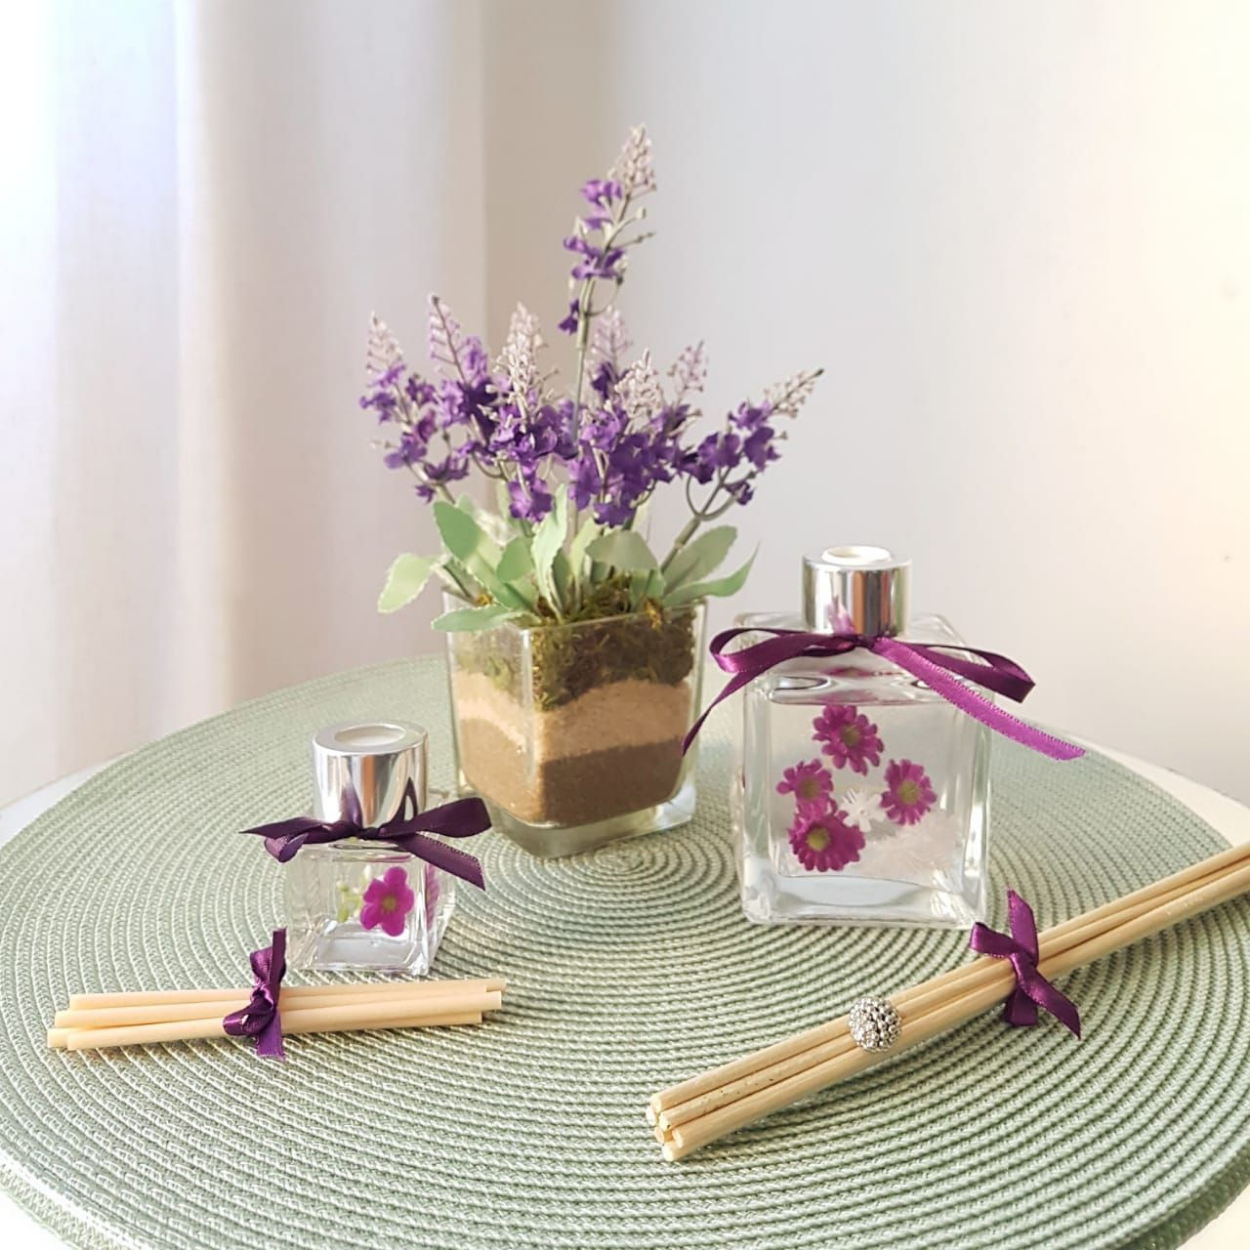 Violeta, lavandas, orquídeas e outras ficam lindas na decoração